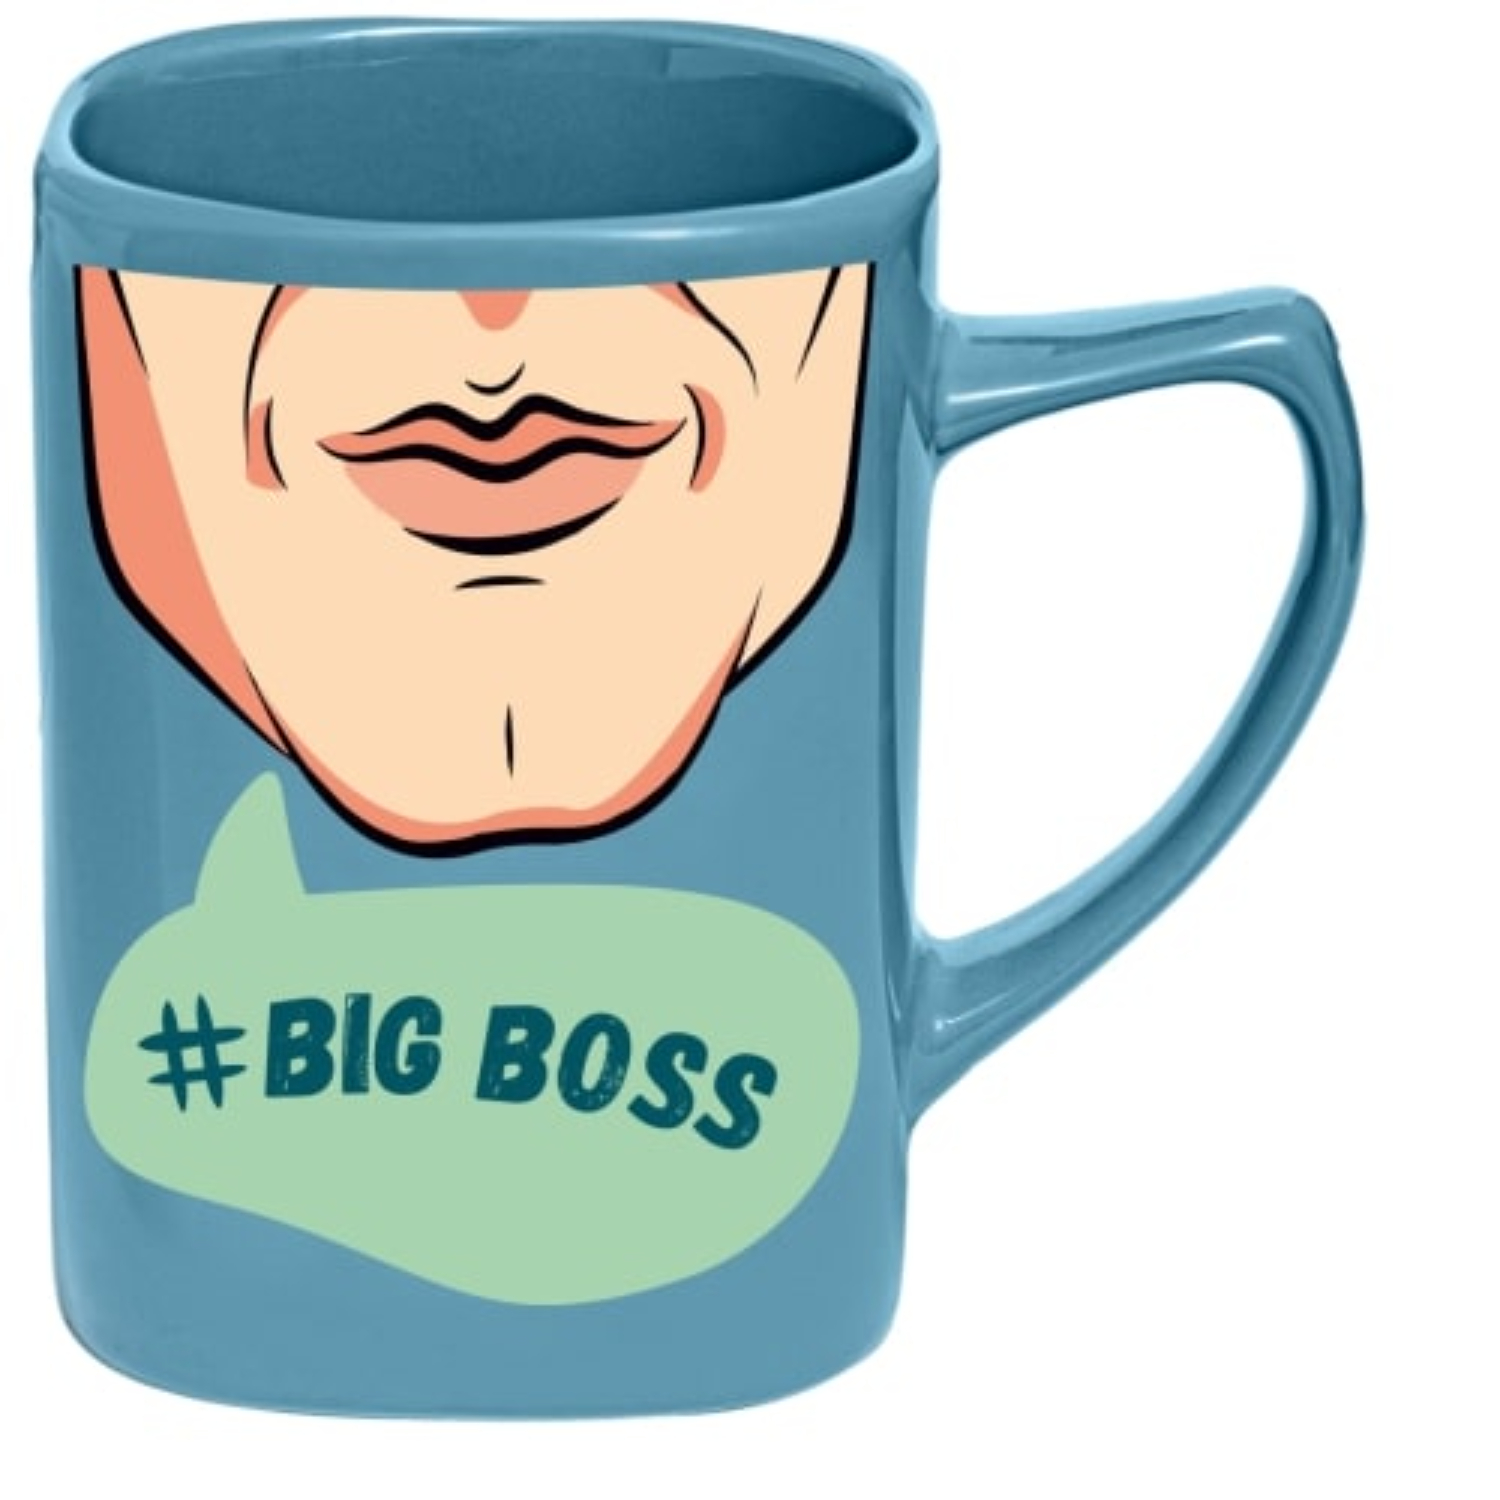 Чашка именная селфи Би-Хэппи Big boss 400 мл чашка би хэппи big boss 430 мл